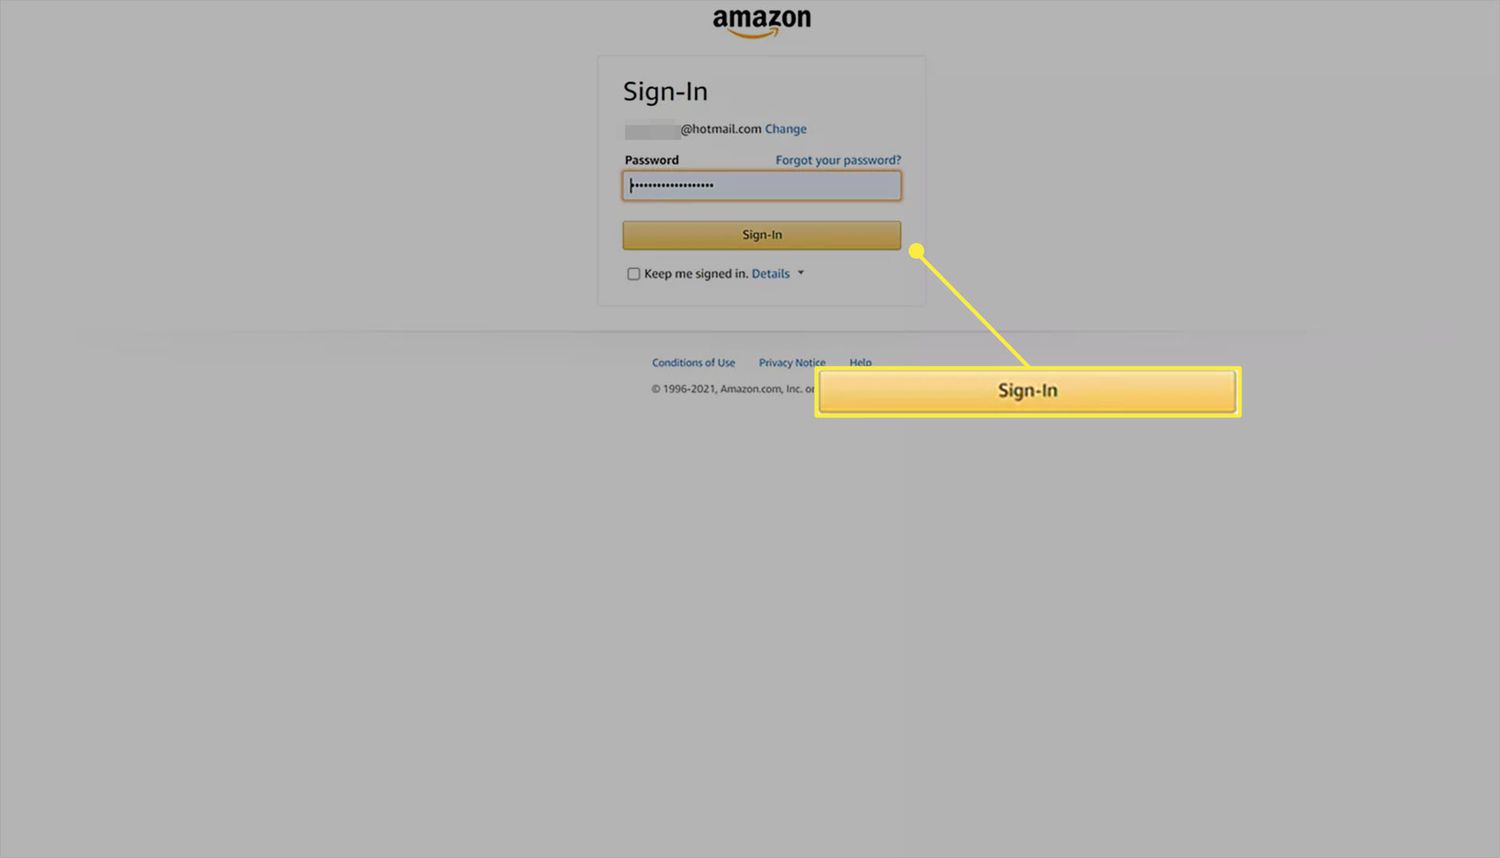 Amazon-webbplats inloggningssida med lösenordet angett.